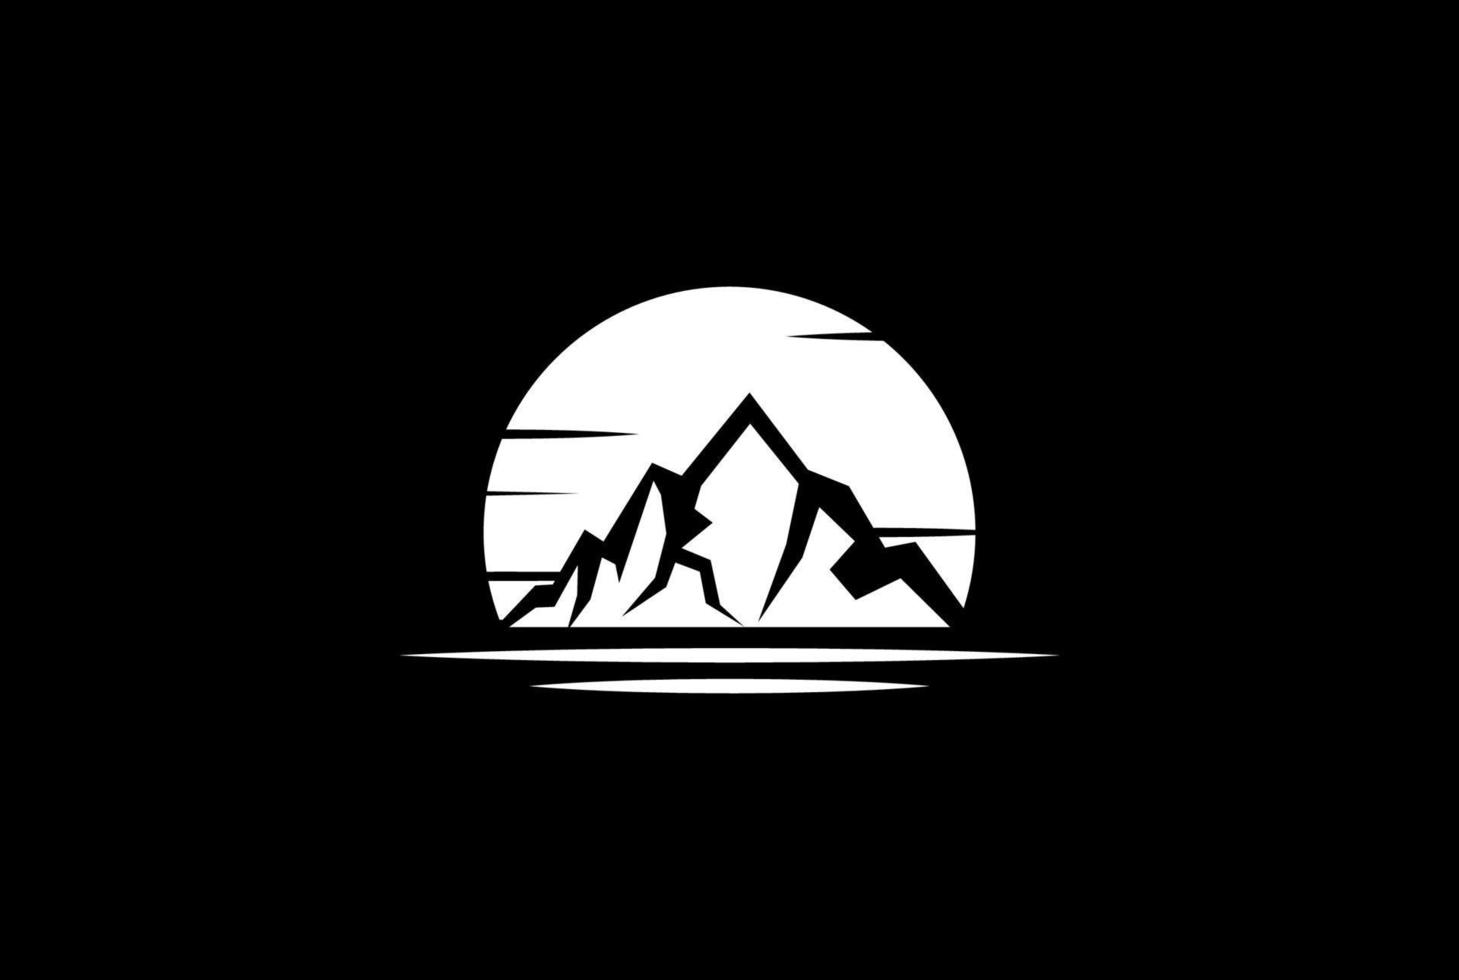 montanha de gelo do nascer do sol retrô vintage ou iceberg com design de logotipo do oceano vetor